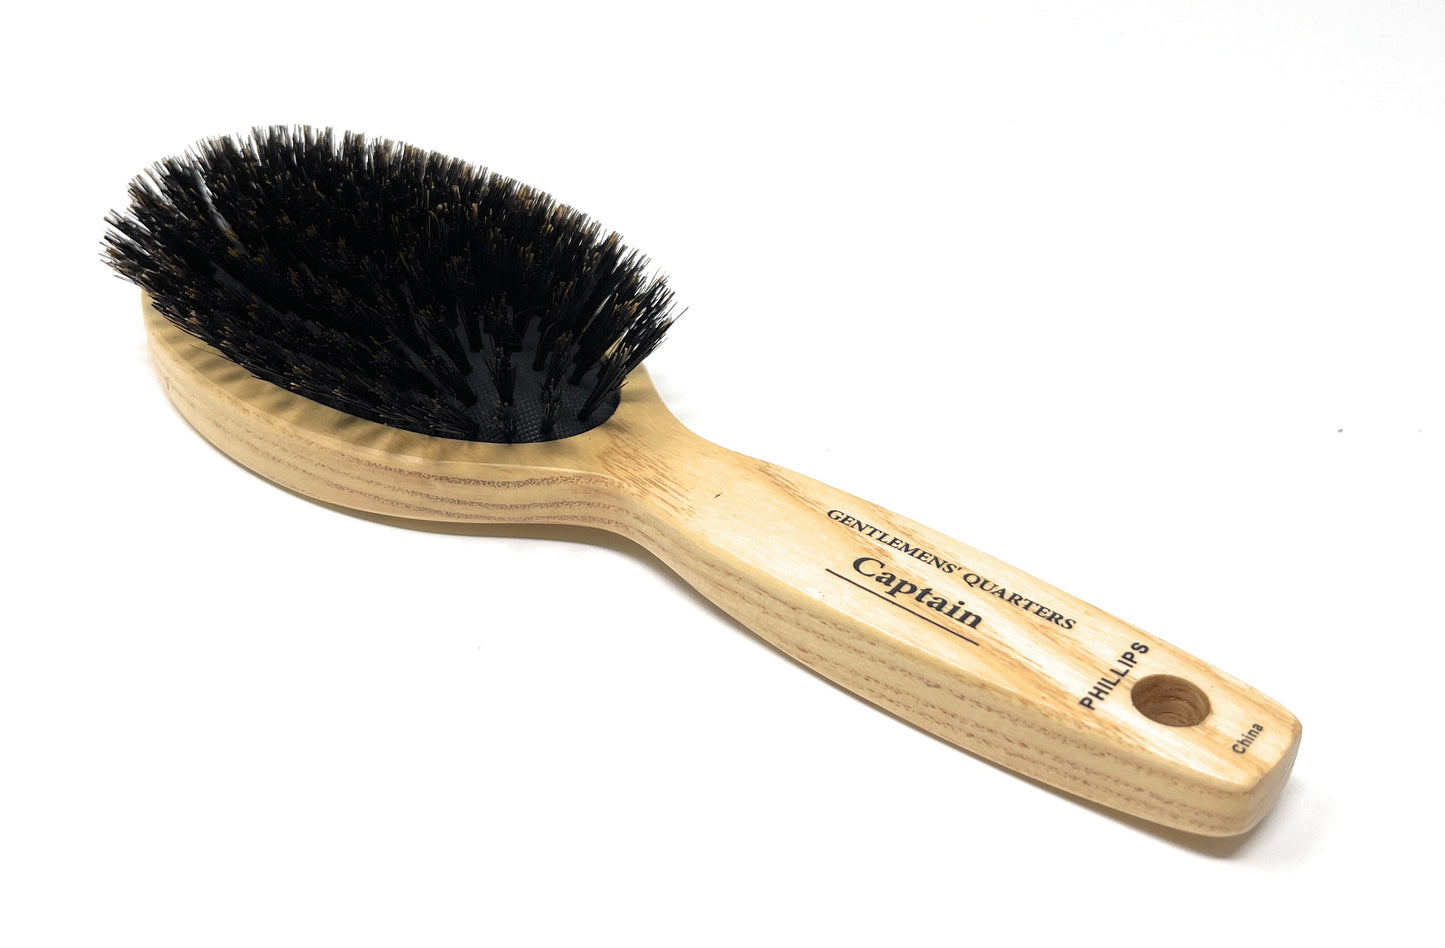 Phillips Brush 8.5 In. Gentlemens’ Quarters Captain Oval Cushion Boar Bristle Hair Brush for Men Wood